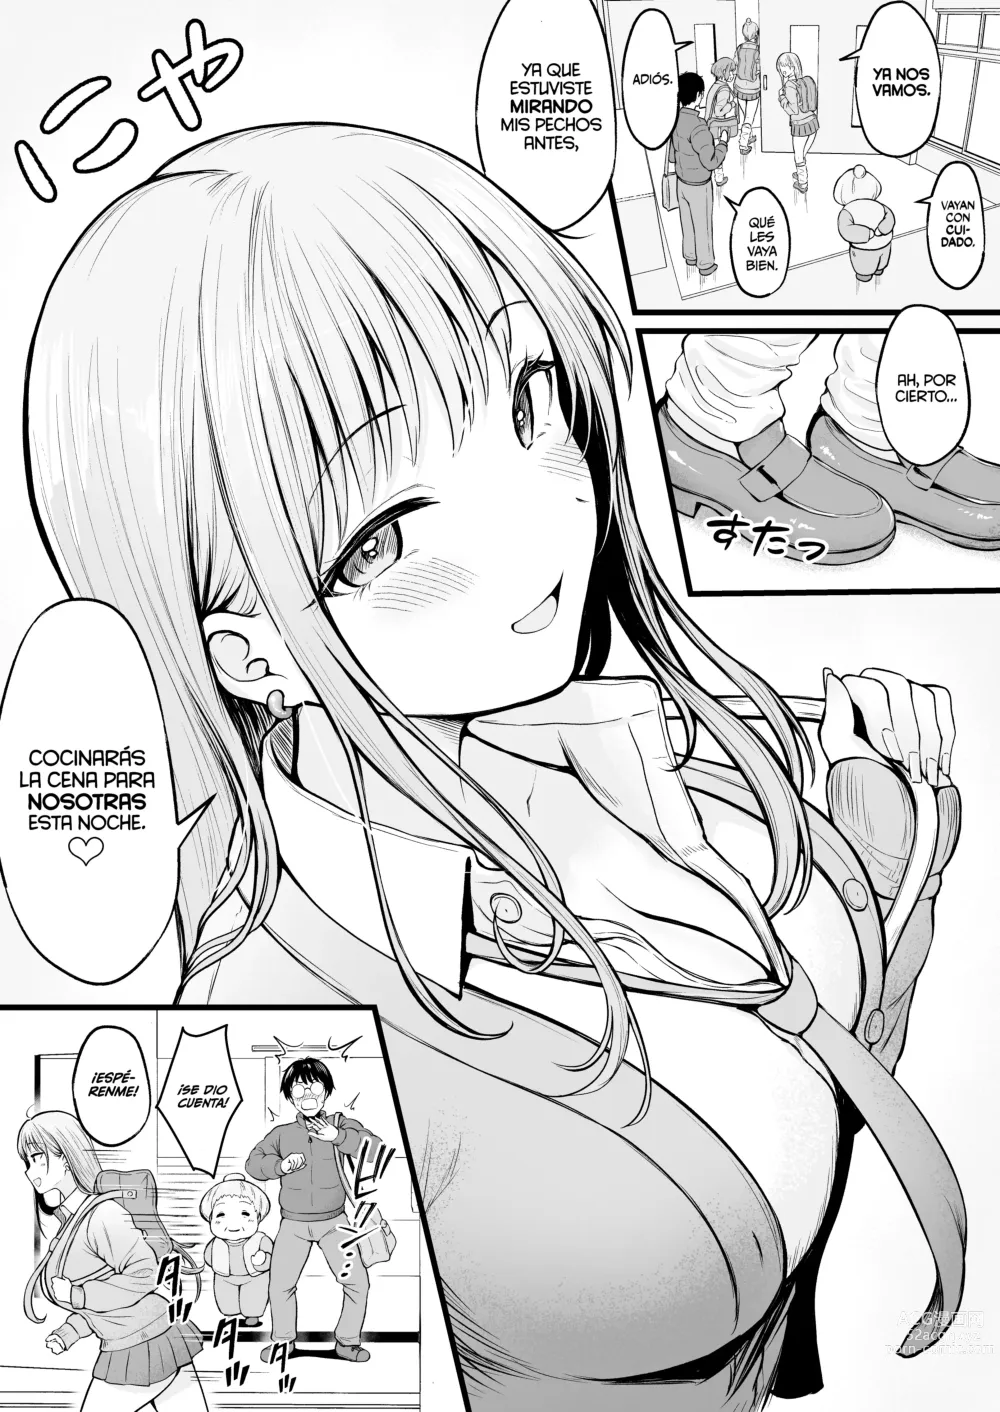 Page 6 of doujinshi Soy el Administrador del Dormitorio de Chicas, Siendo Manipulado por las Chicas que Viven Ahí.